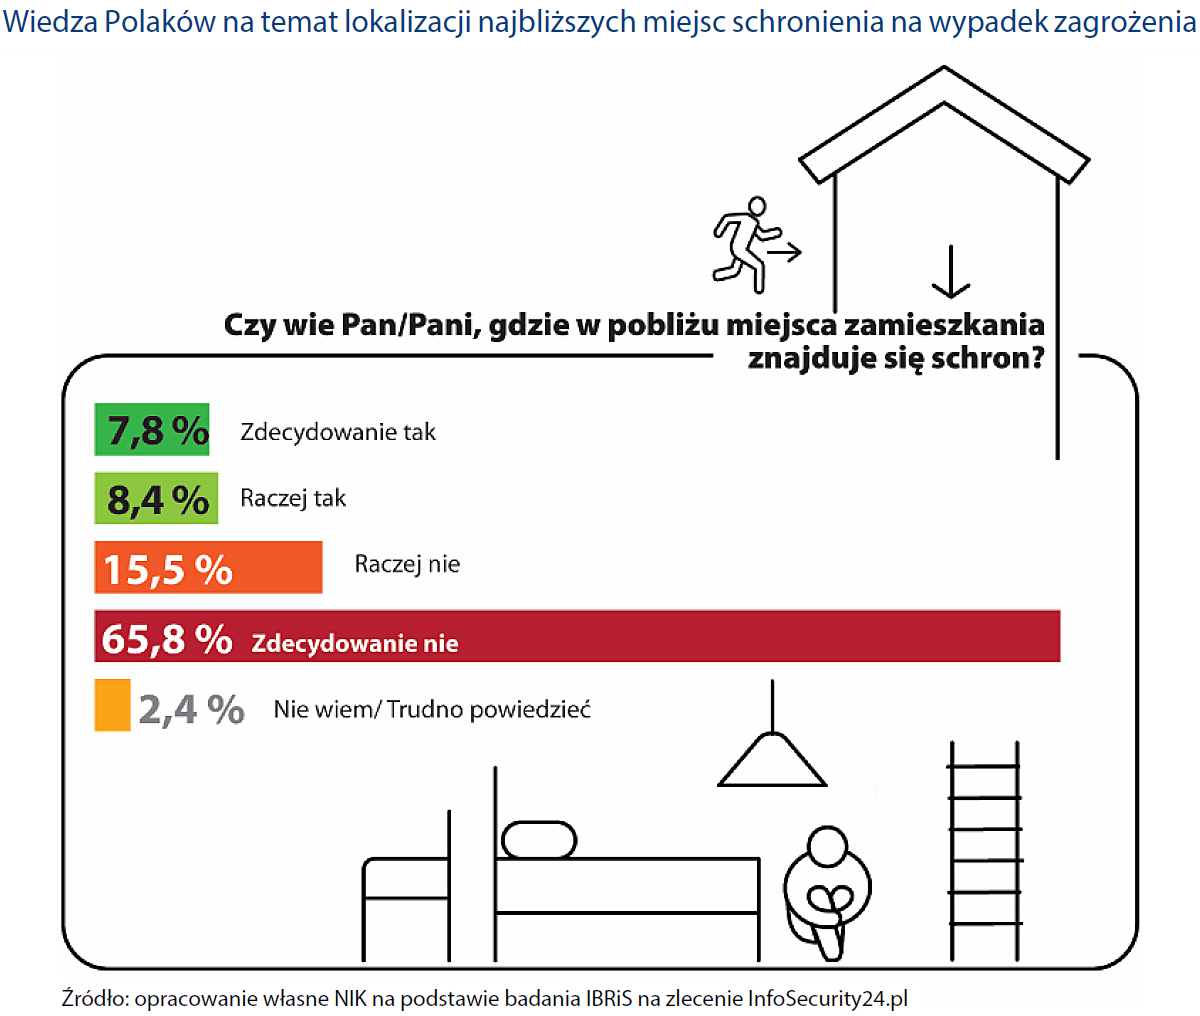 Wiedza Polaków na temat lokalizacji najbliższych miejsc schronienia (opis obrazka ponizej)